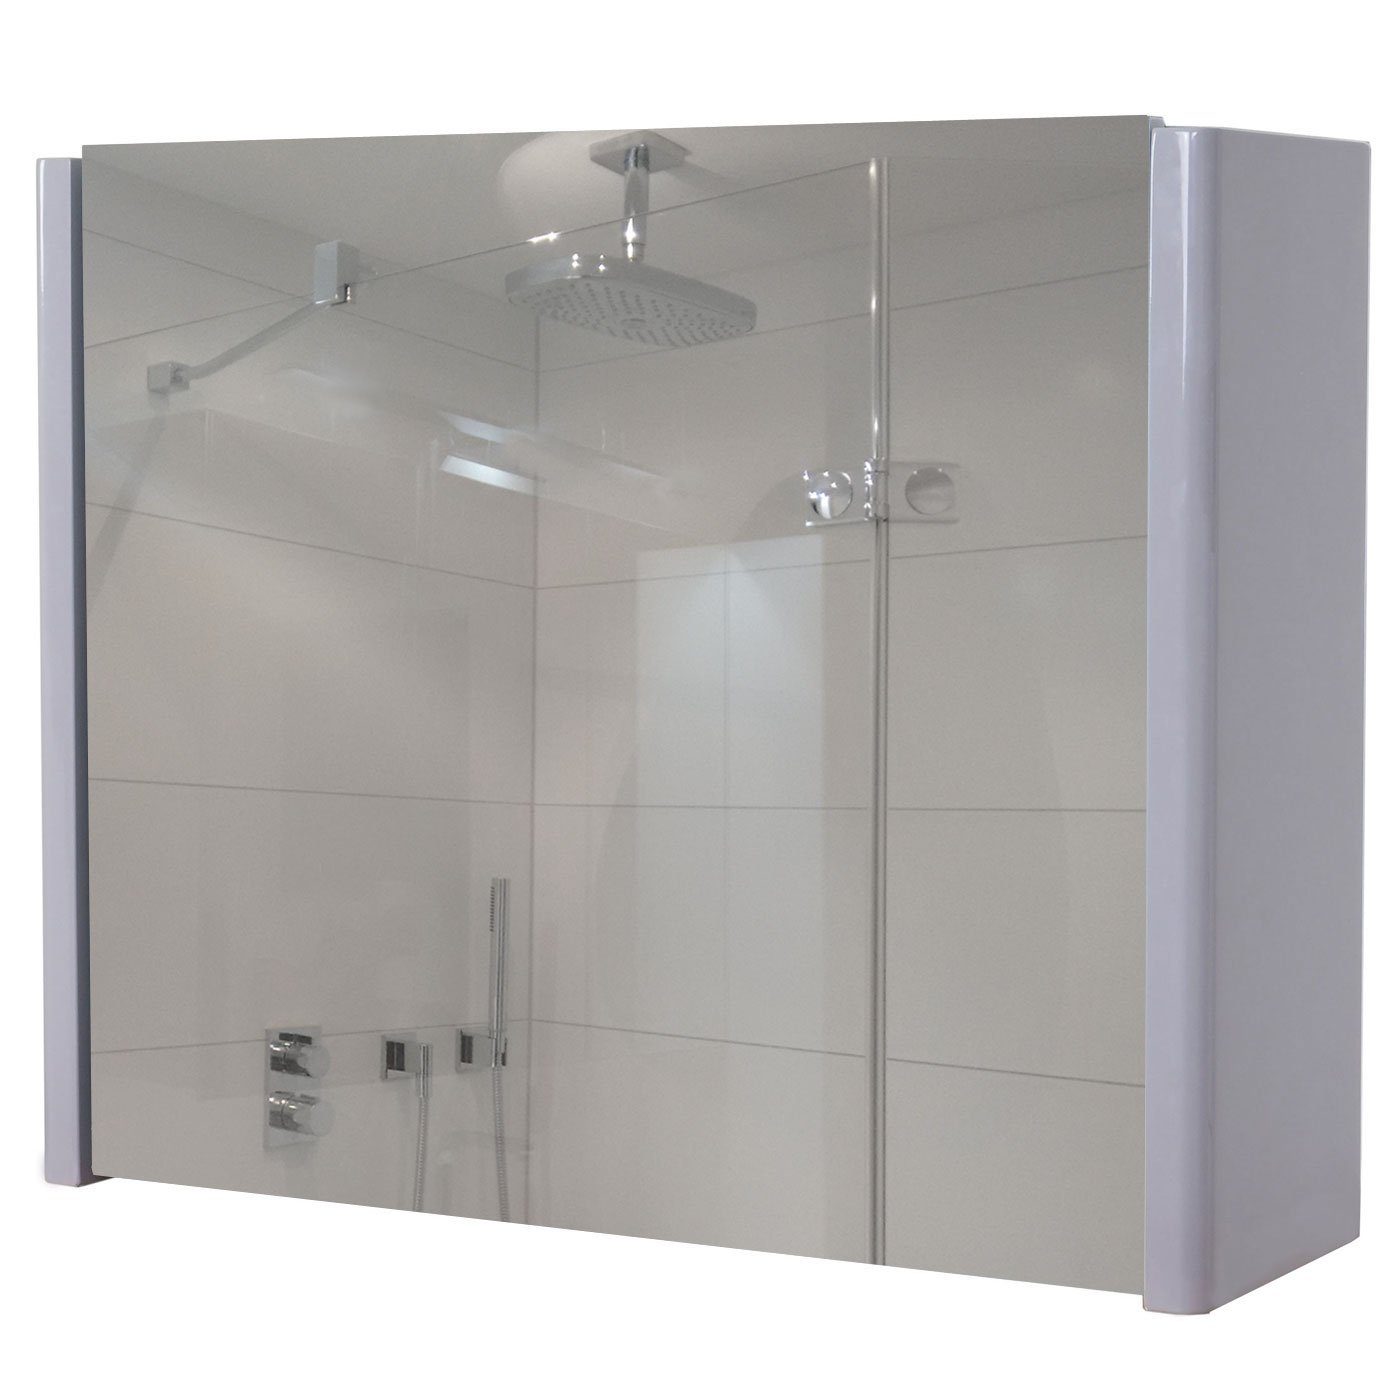 MCW Badezimmerspiegelschrank MCW-B19-C mit Ablagefläche, Inkl. grau Einlegeboden grau | Hochglanz-Optik